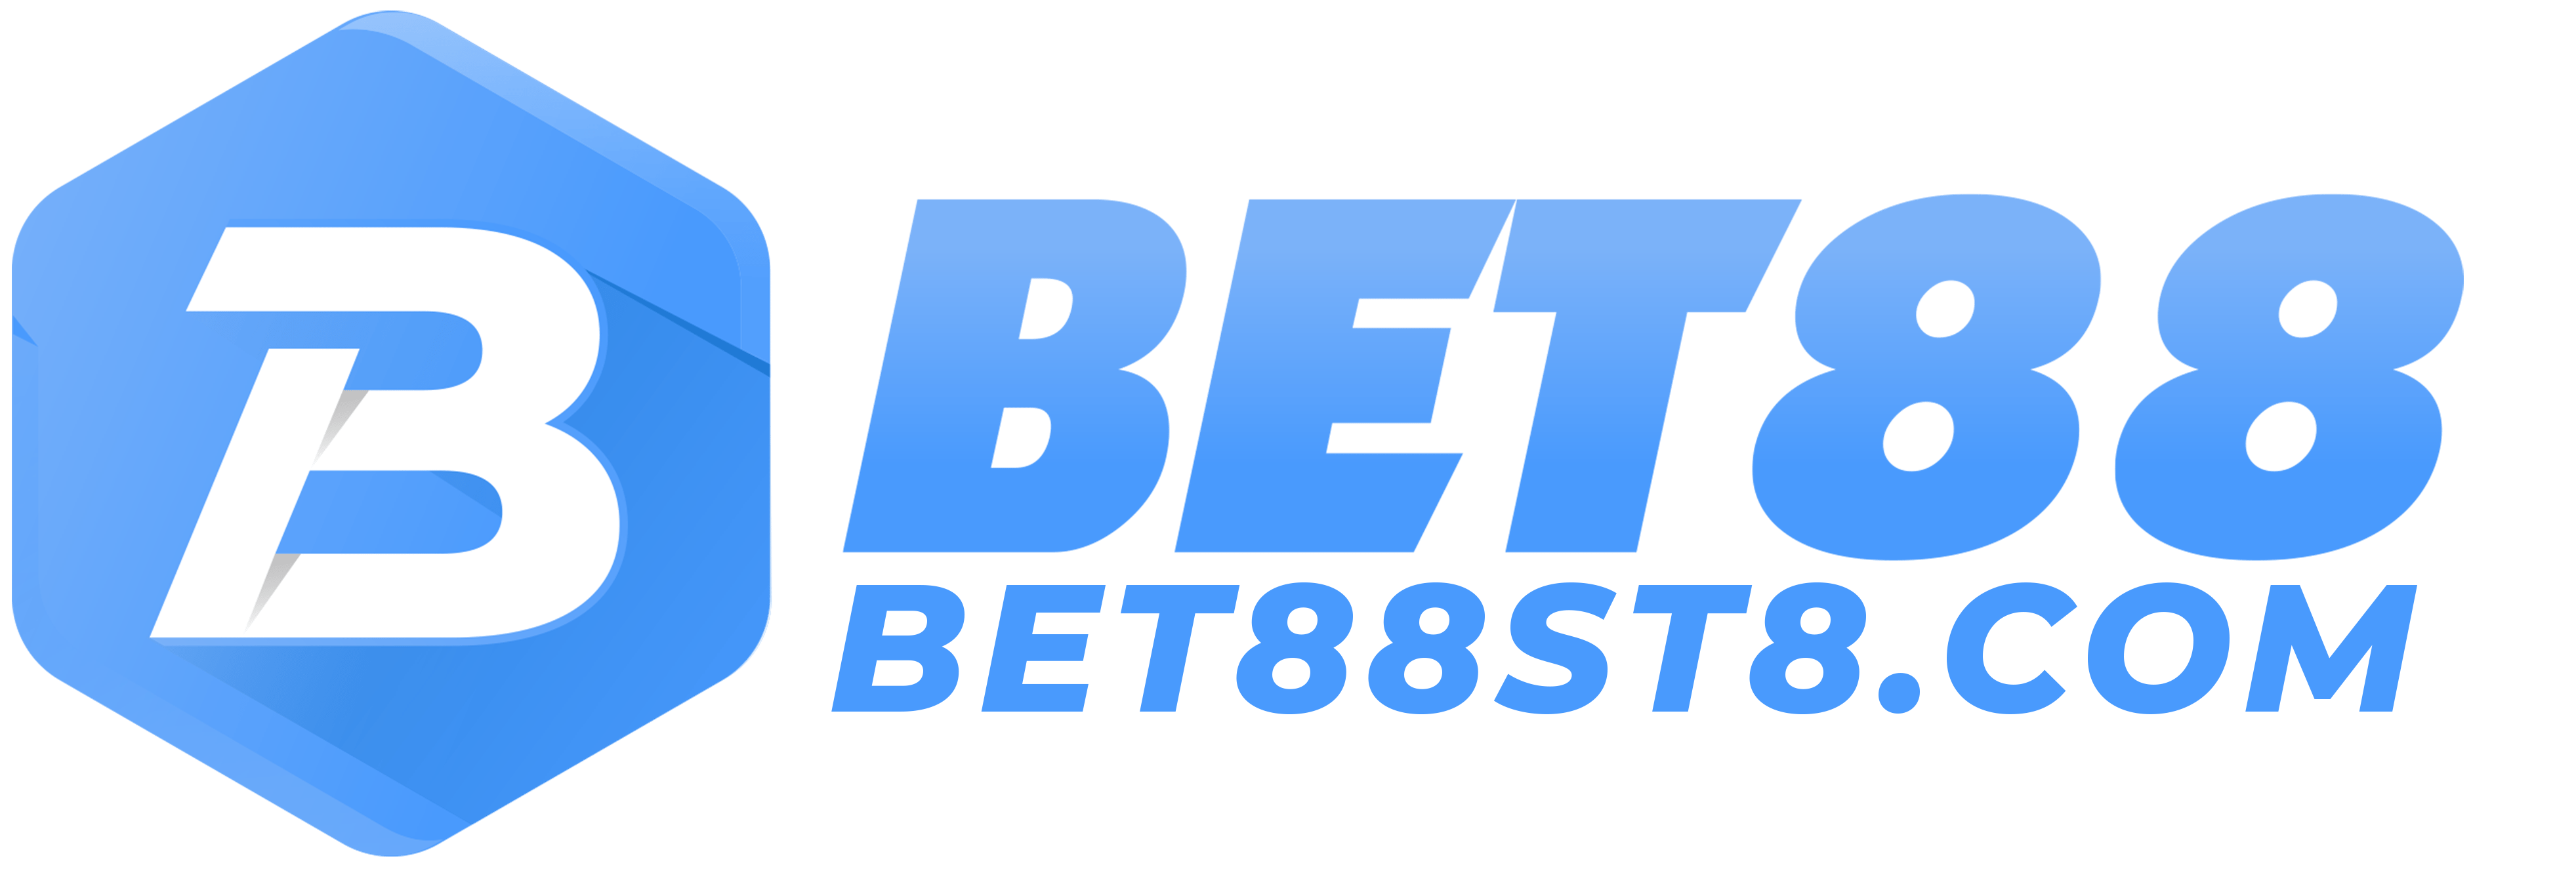 bet88st8.com